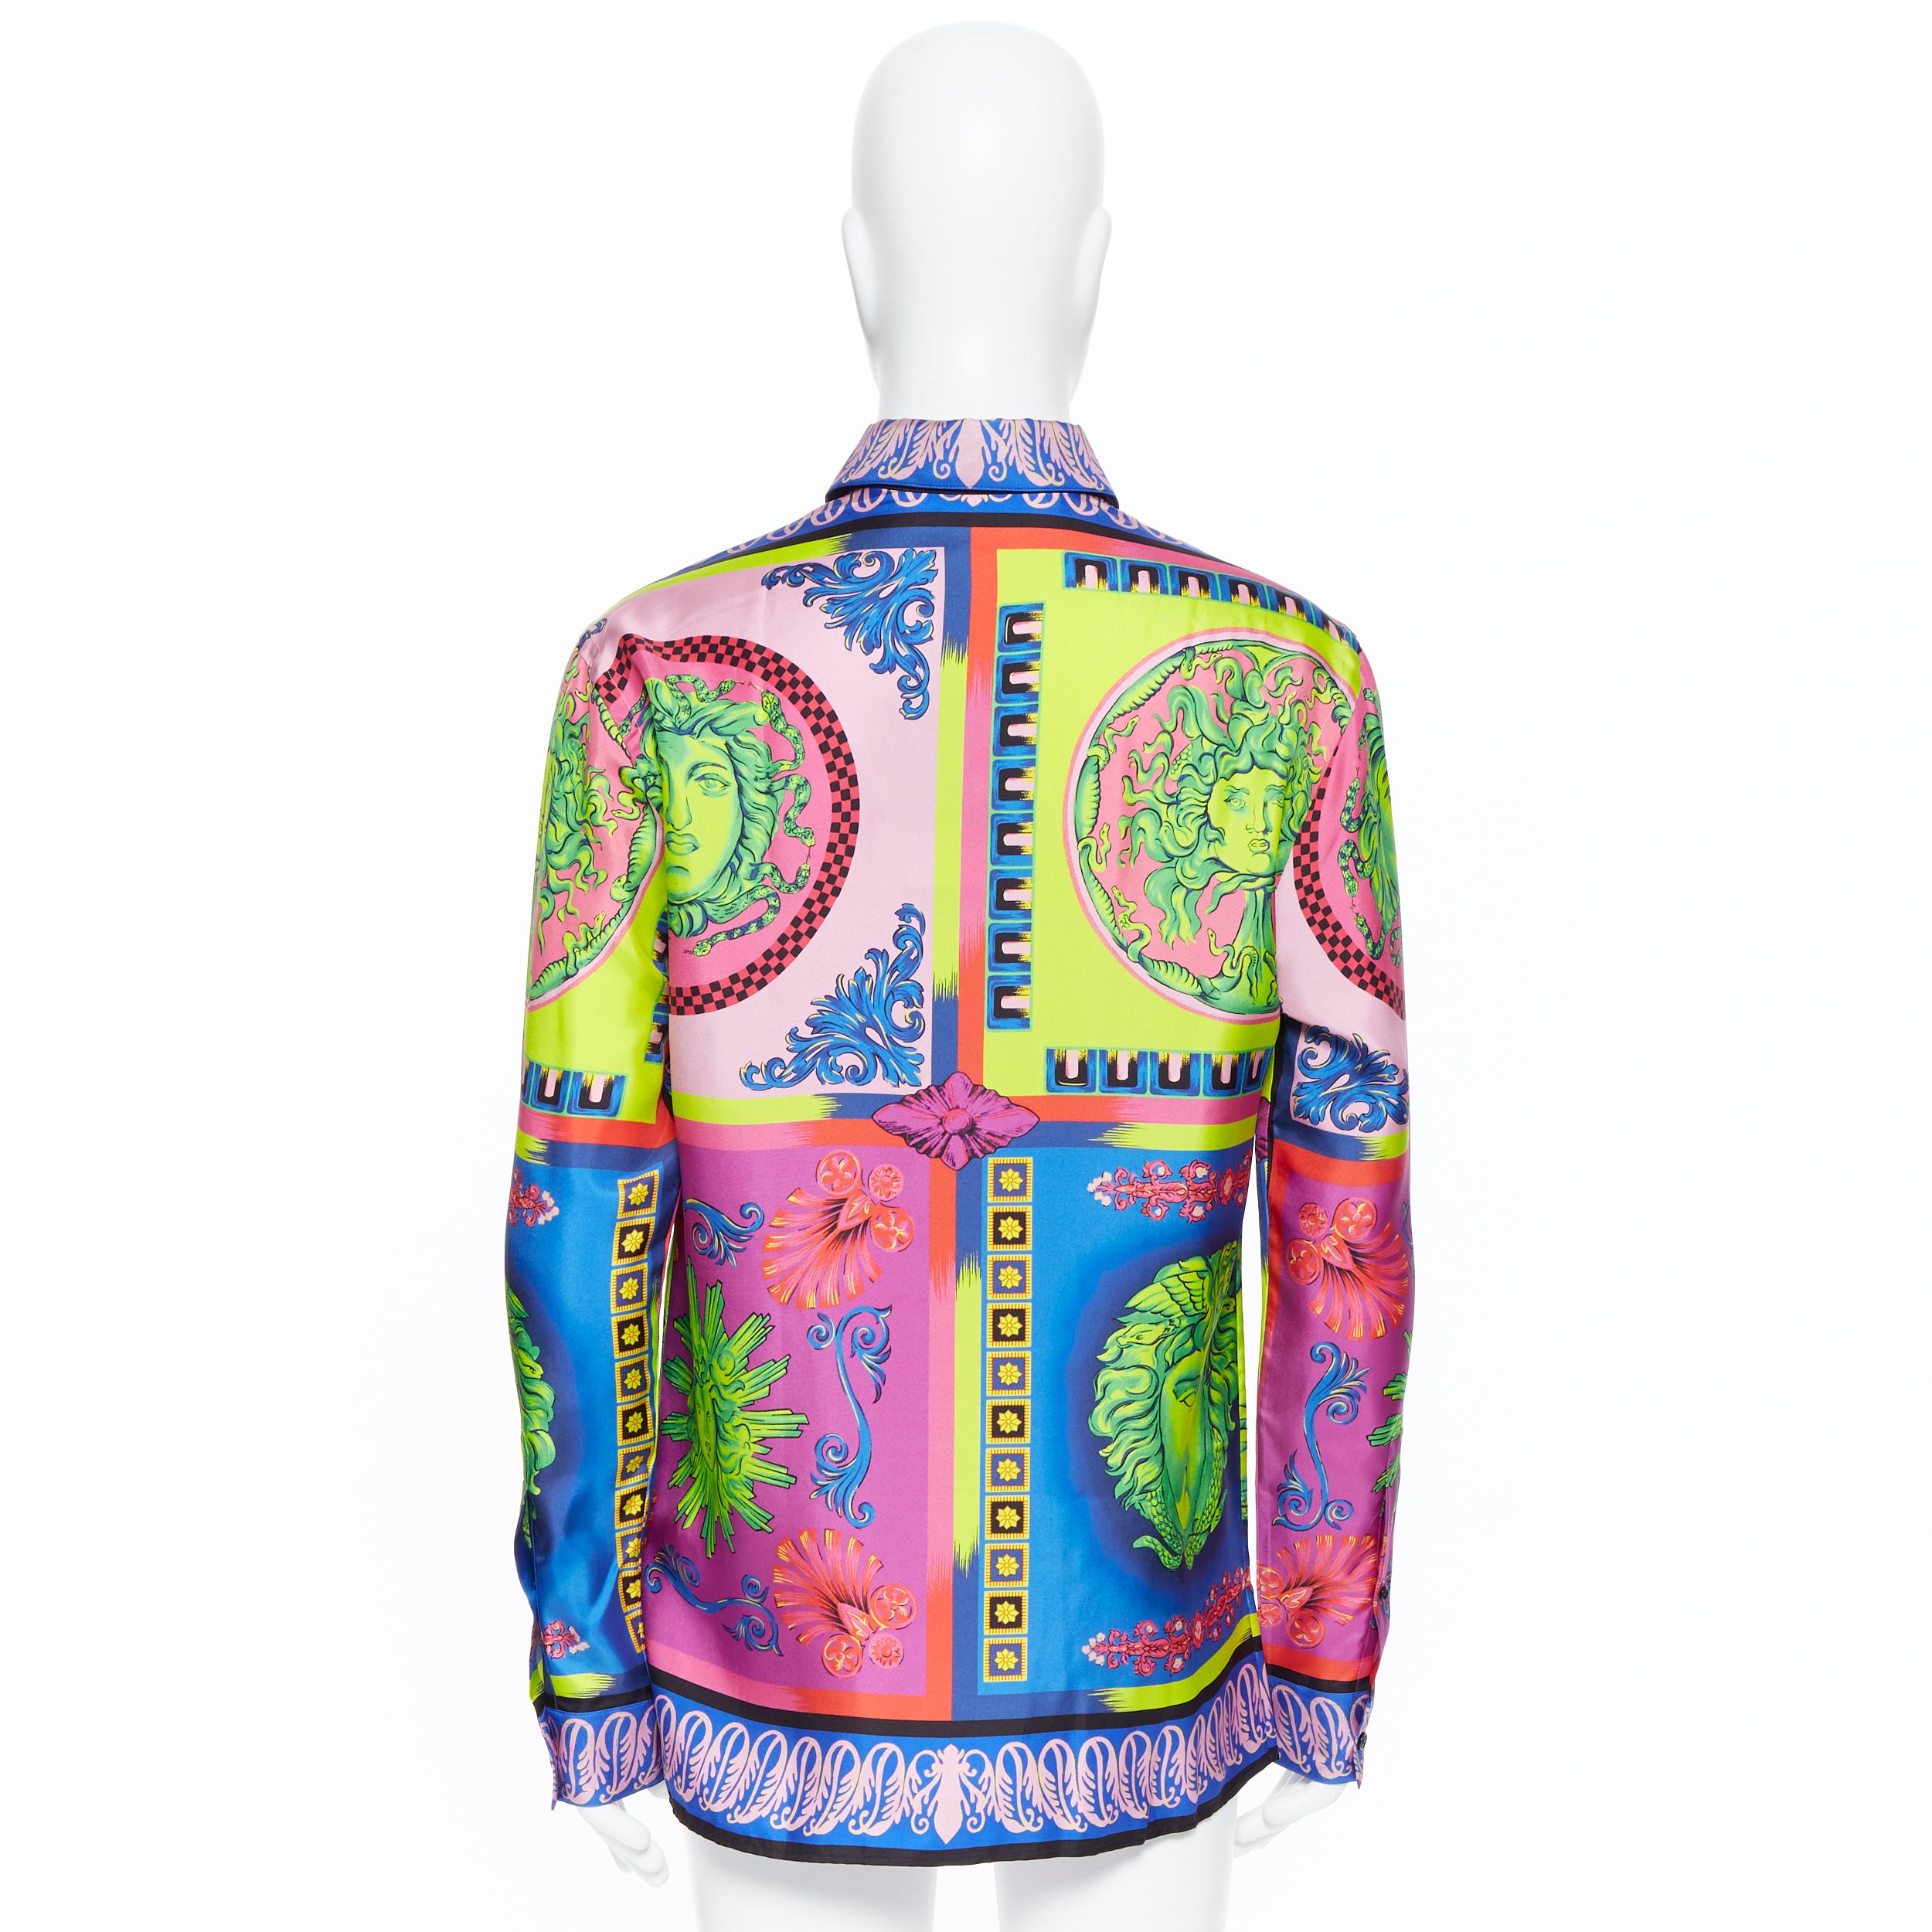 Beige new VERSACE 2018 Runway Pop Foulard Medusa neon baroque 100% silk shirt EU40 L